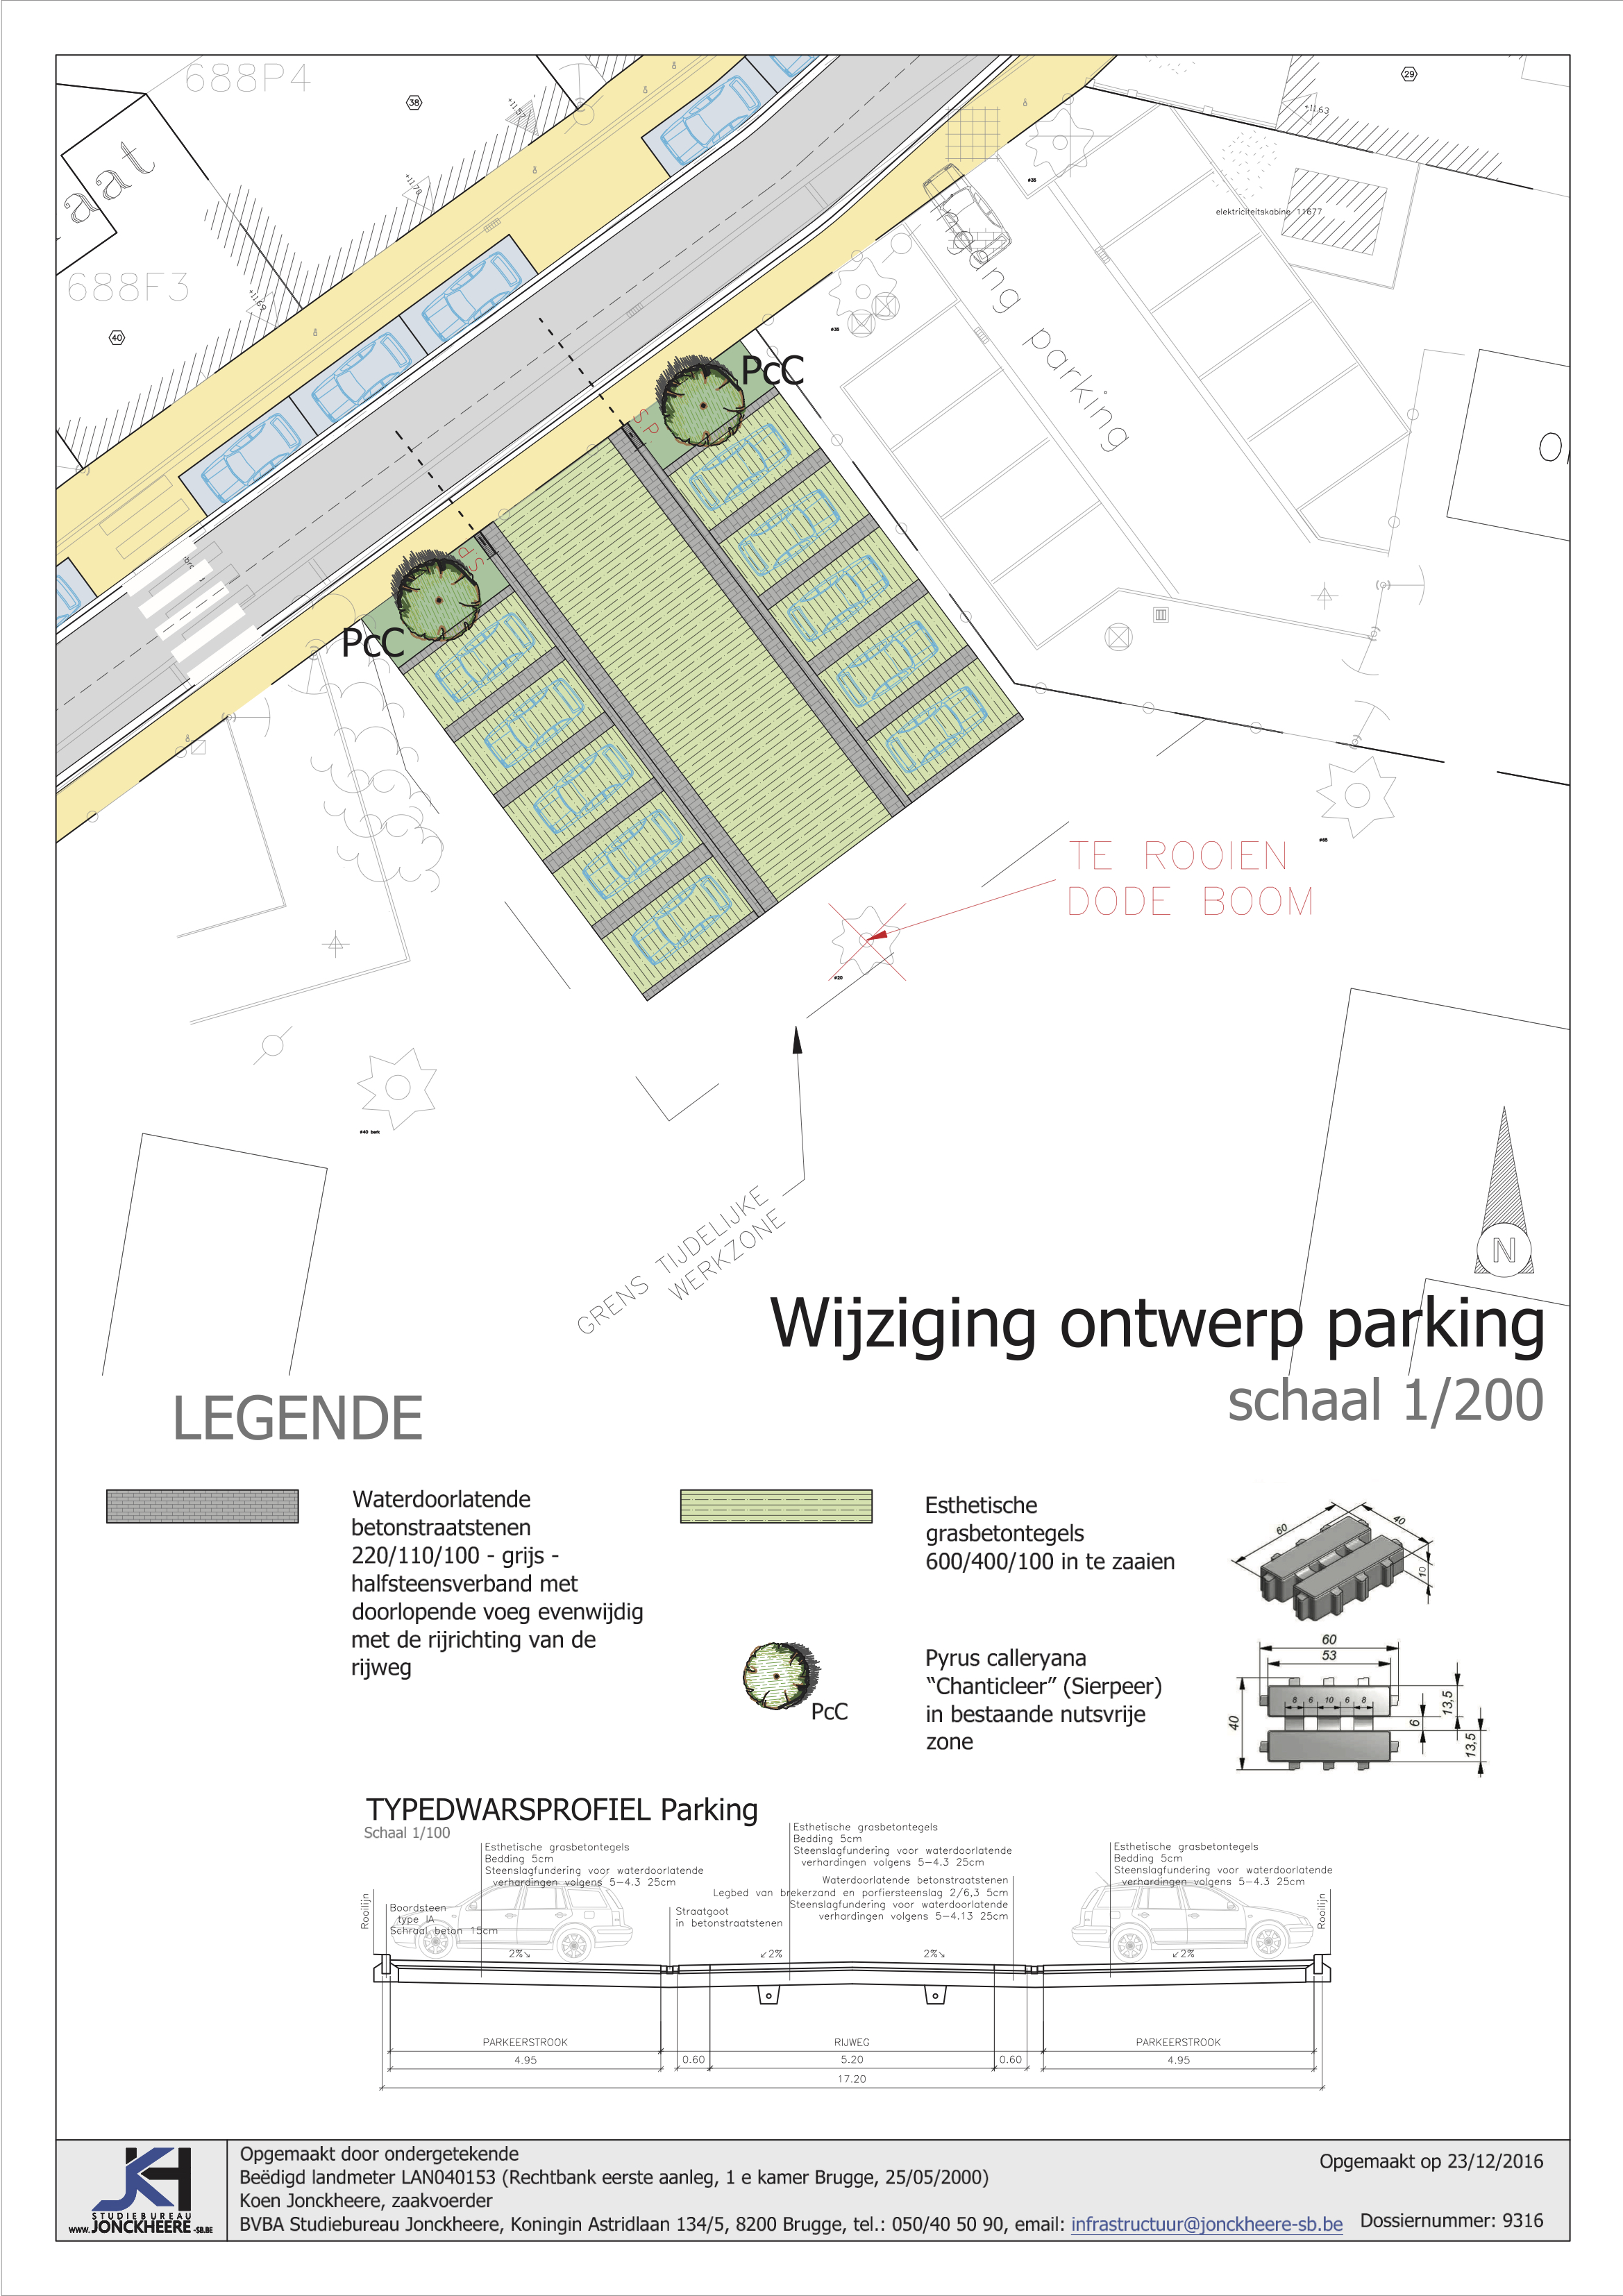 Parking (dossier Macieberg 2016-2018) met infiltratie d.m.v. esthetische grasbetontegels en uitstapzone in betonstraatstenen, Oostkamp